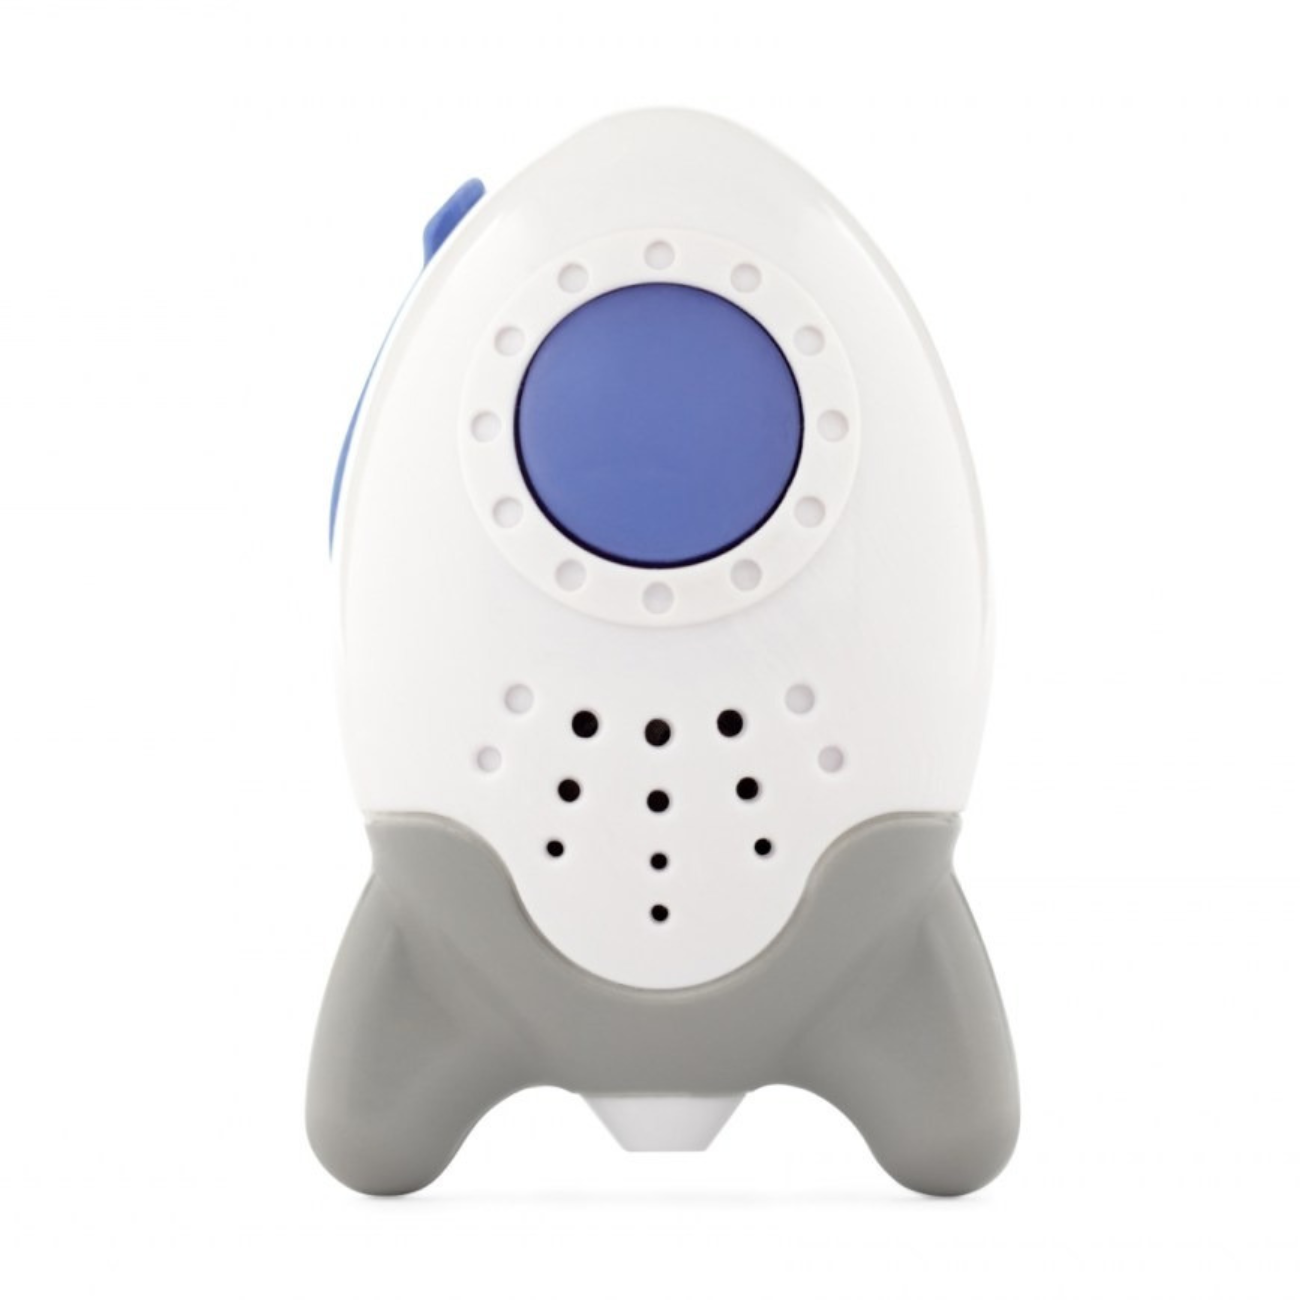 Dispozitiv pentru adormit copiii, Wooshh Rockit, cu sunete si USB